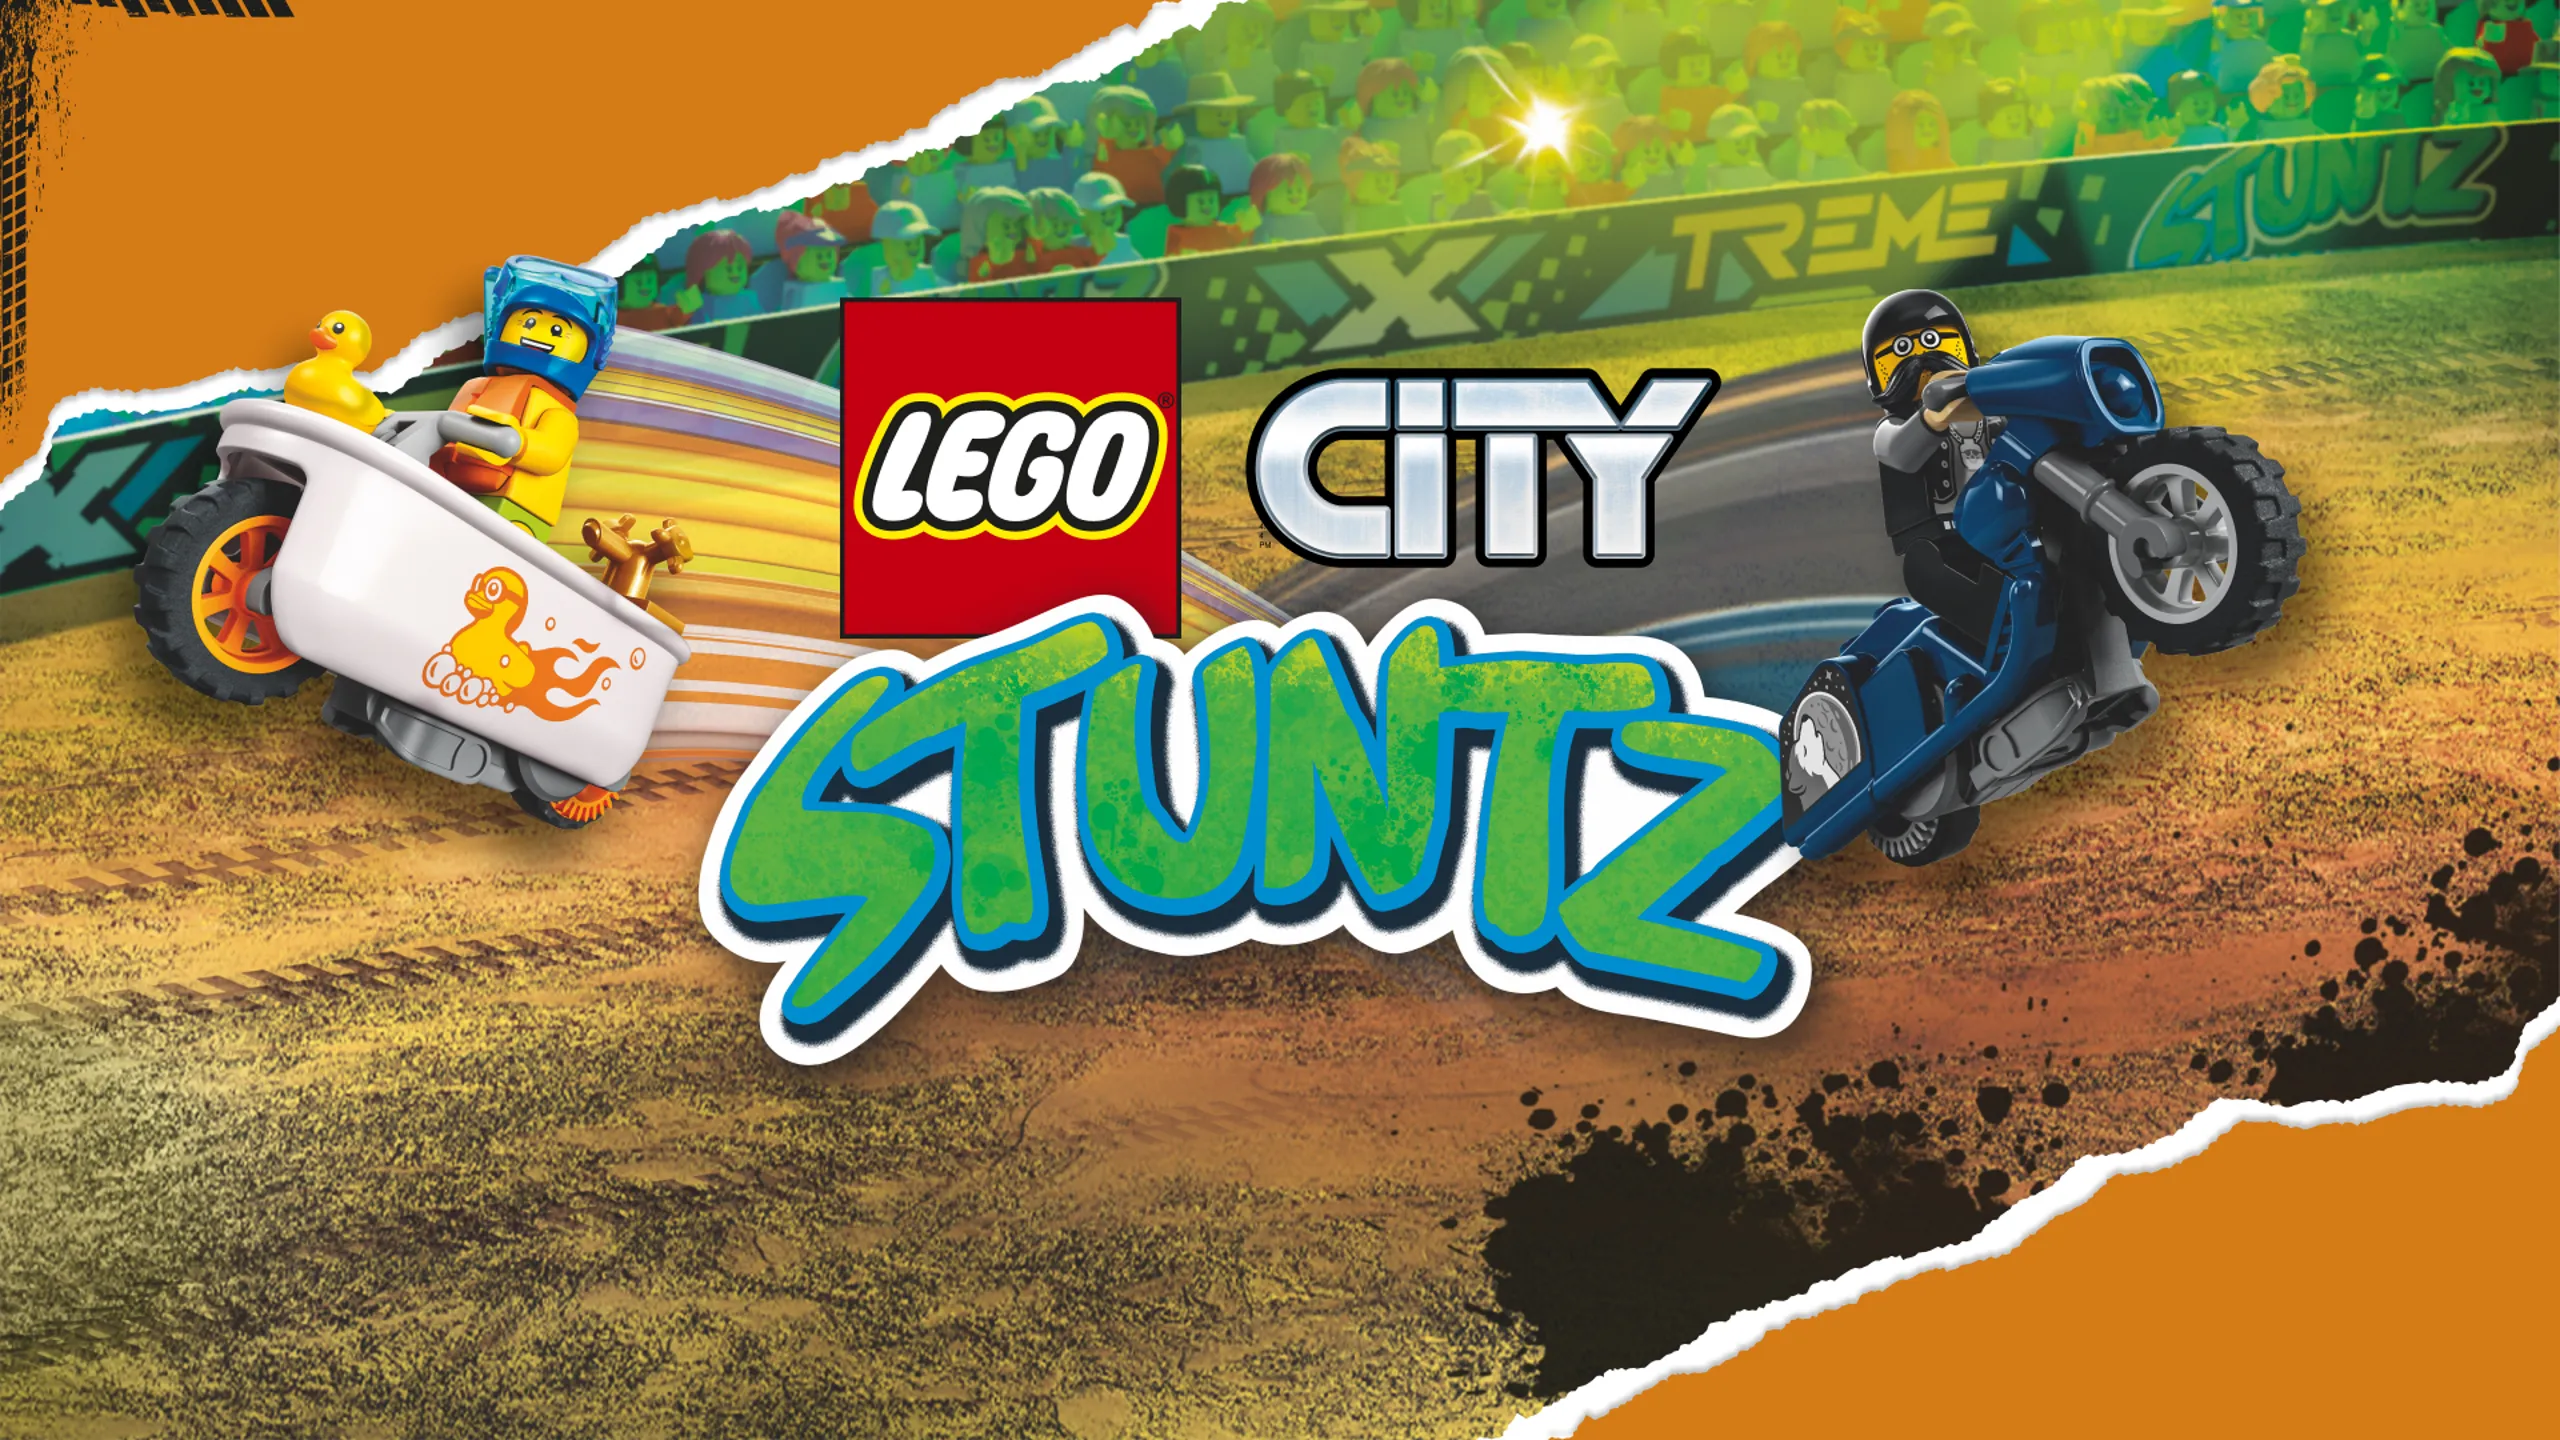 Rocket Stunt Bike 60298 | City | Buy online at the Official LEGO® Shop US